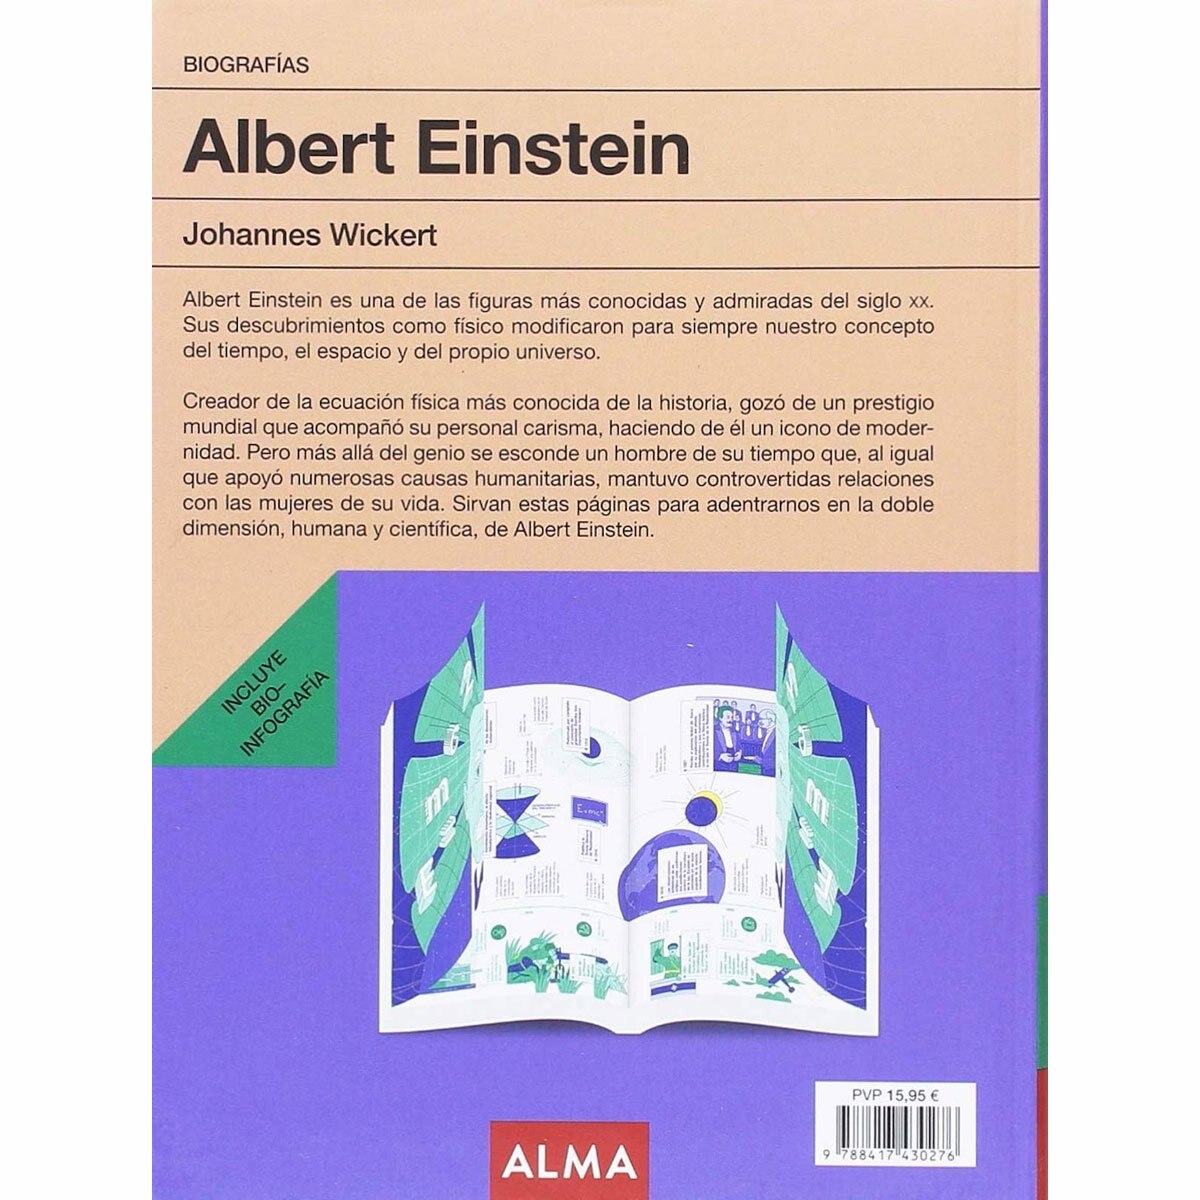 Albert Einstein Biografía Alma